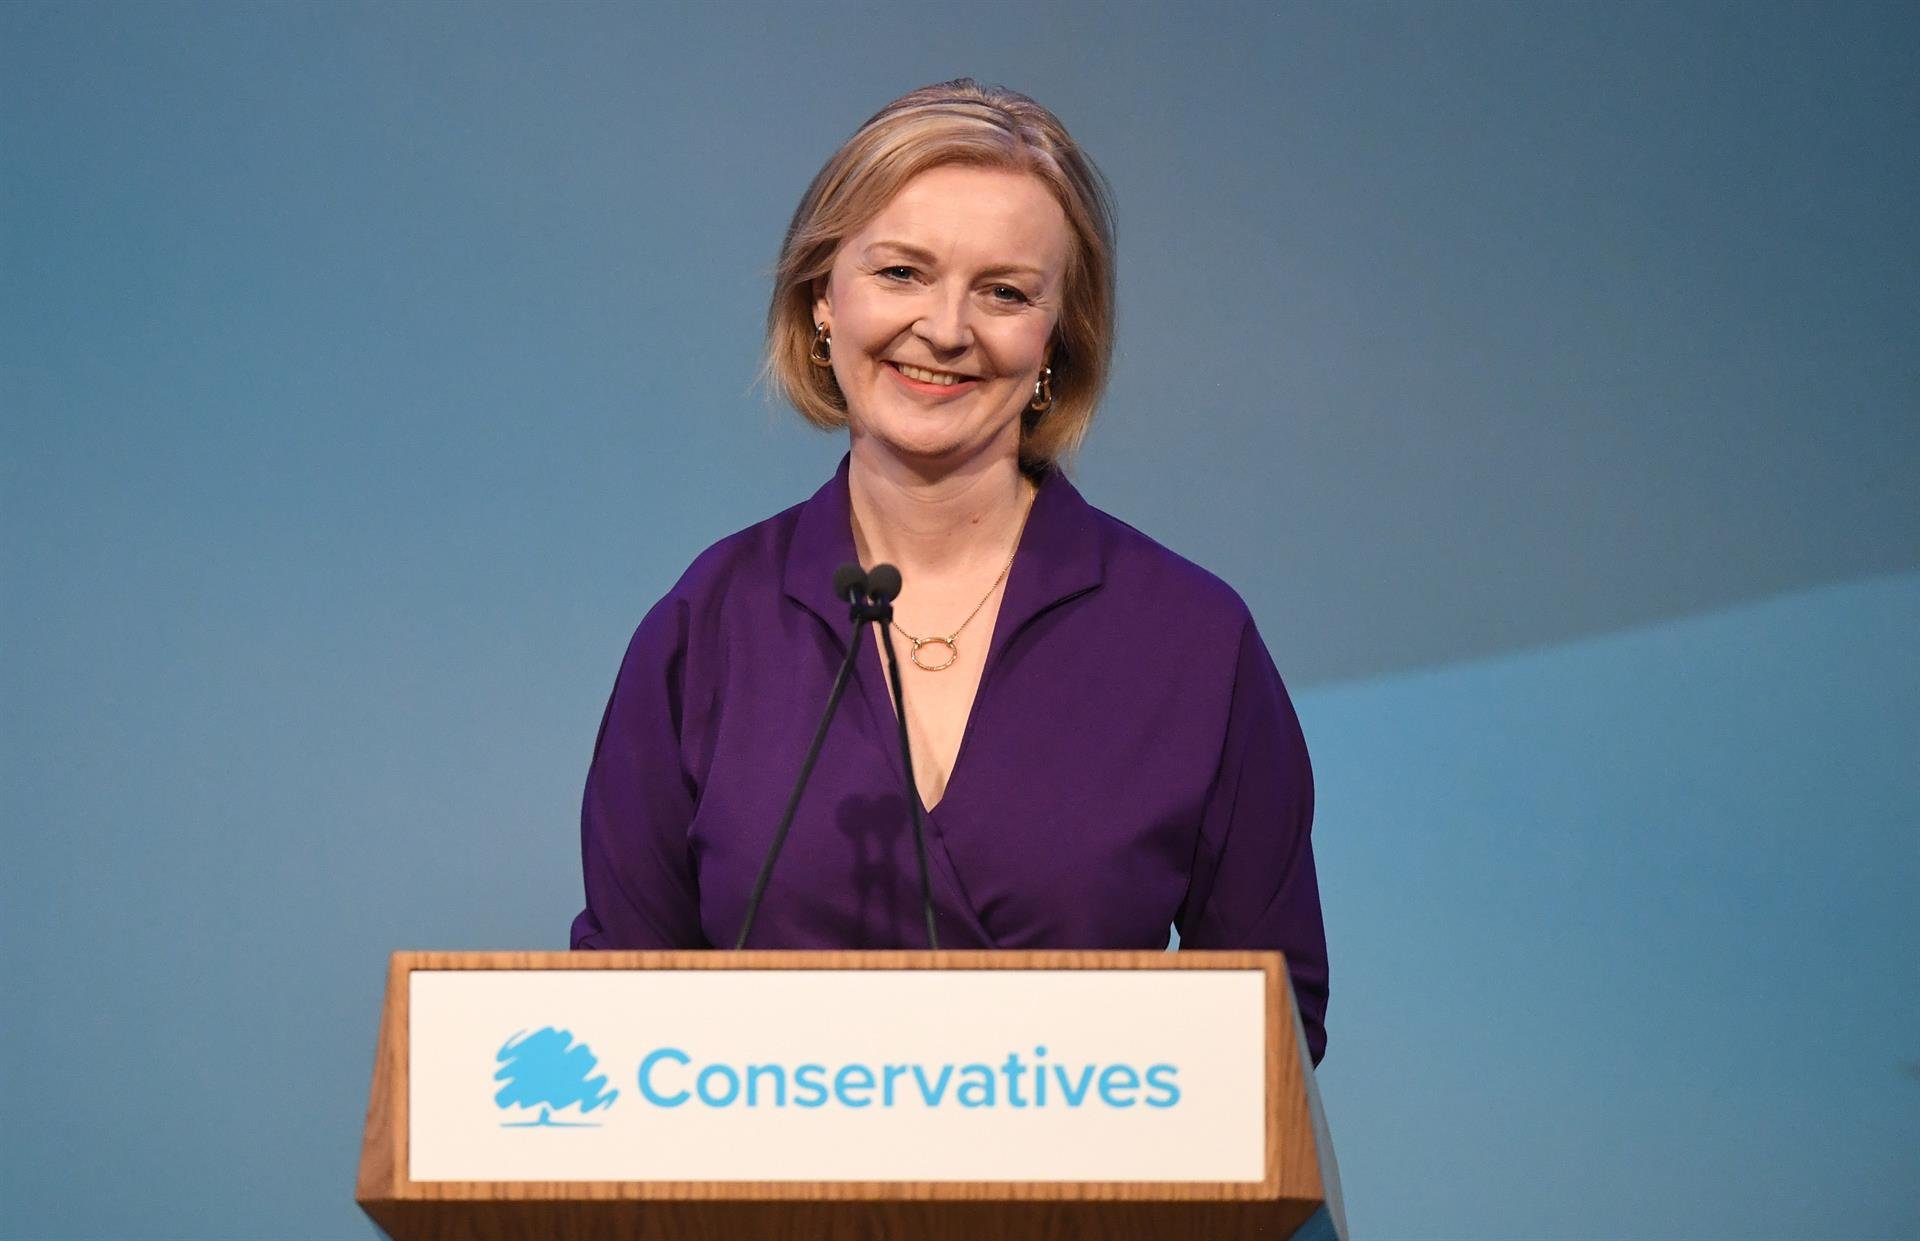 ¿Quién es Liz Truss, la conservadora que liderará la era post-Johnson en el Reino Unido?